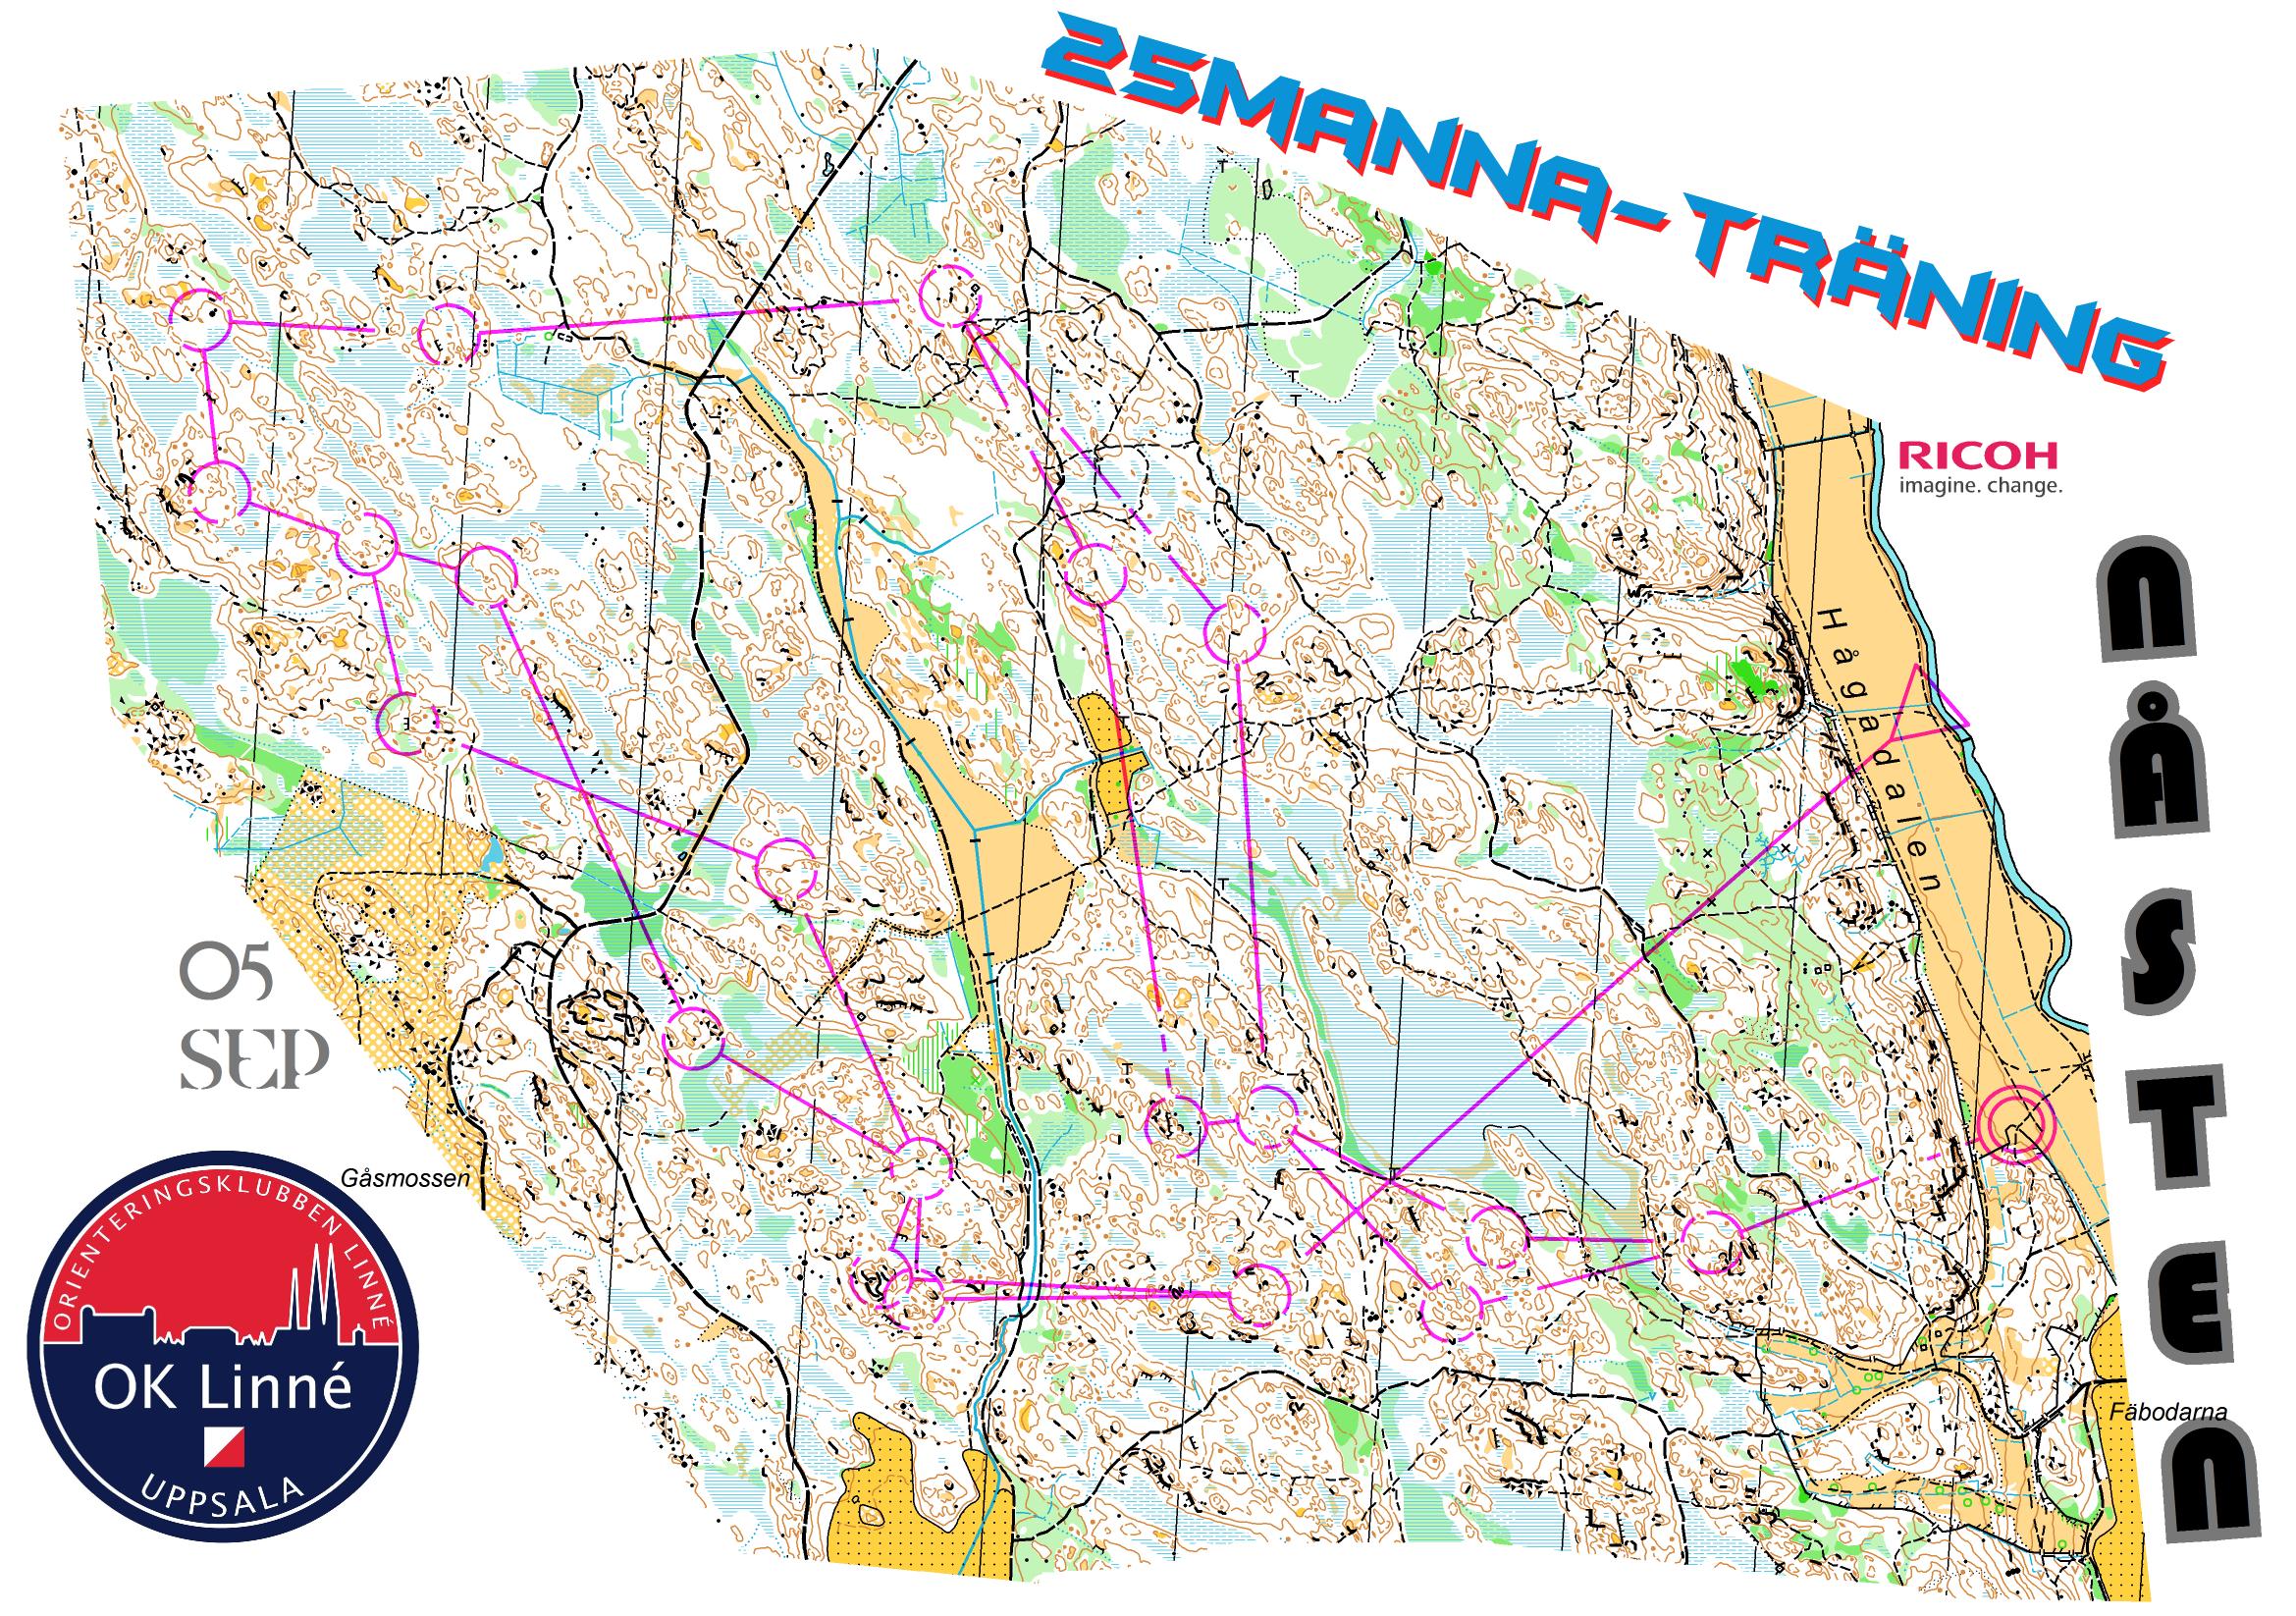 25manna-träning, Lång (05/09/2013)